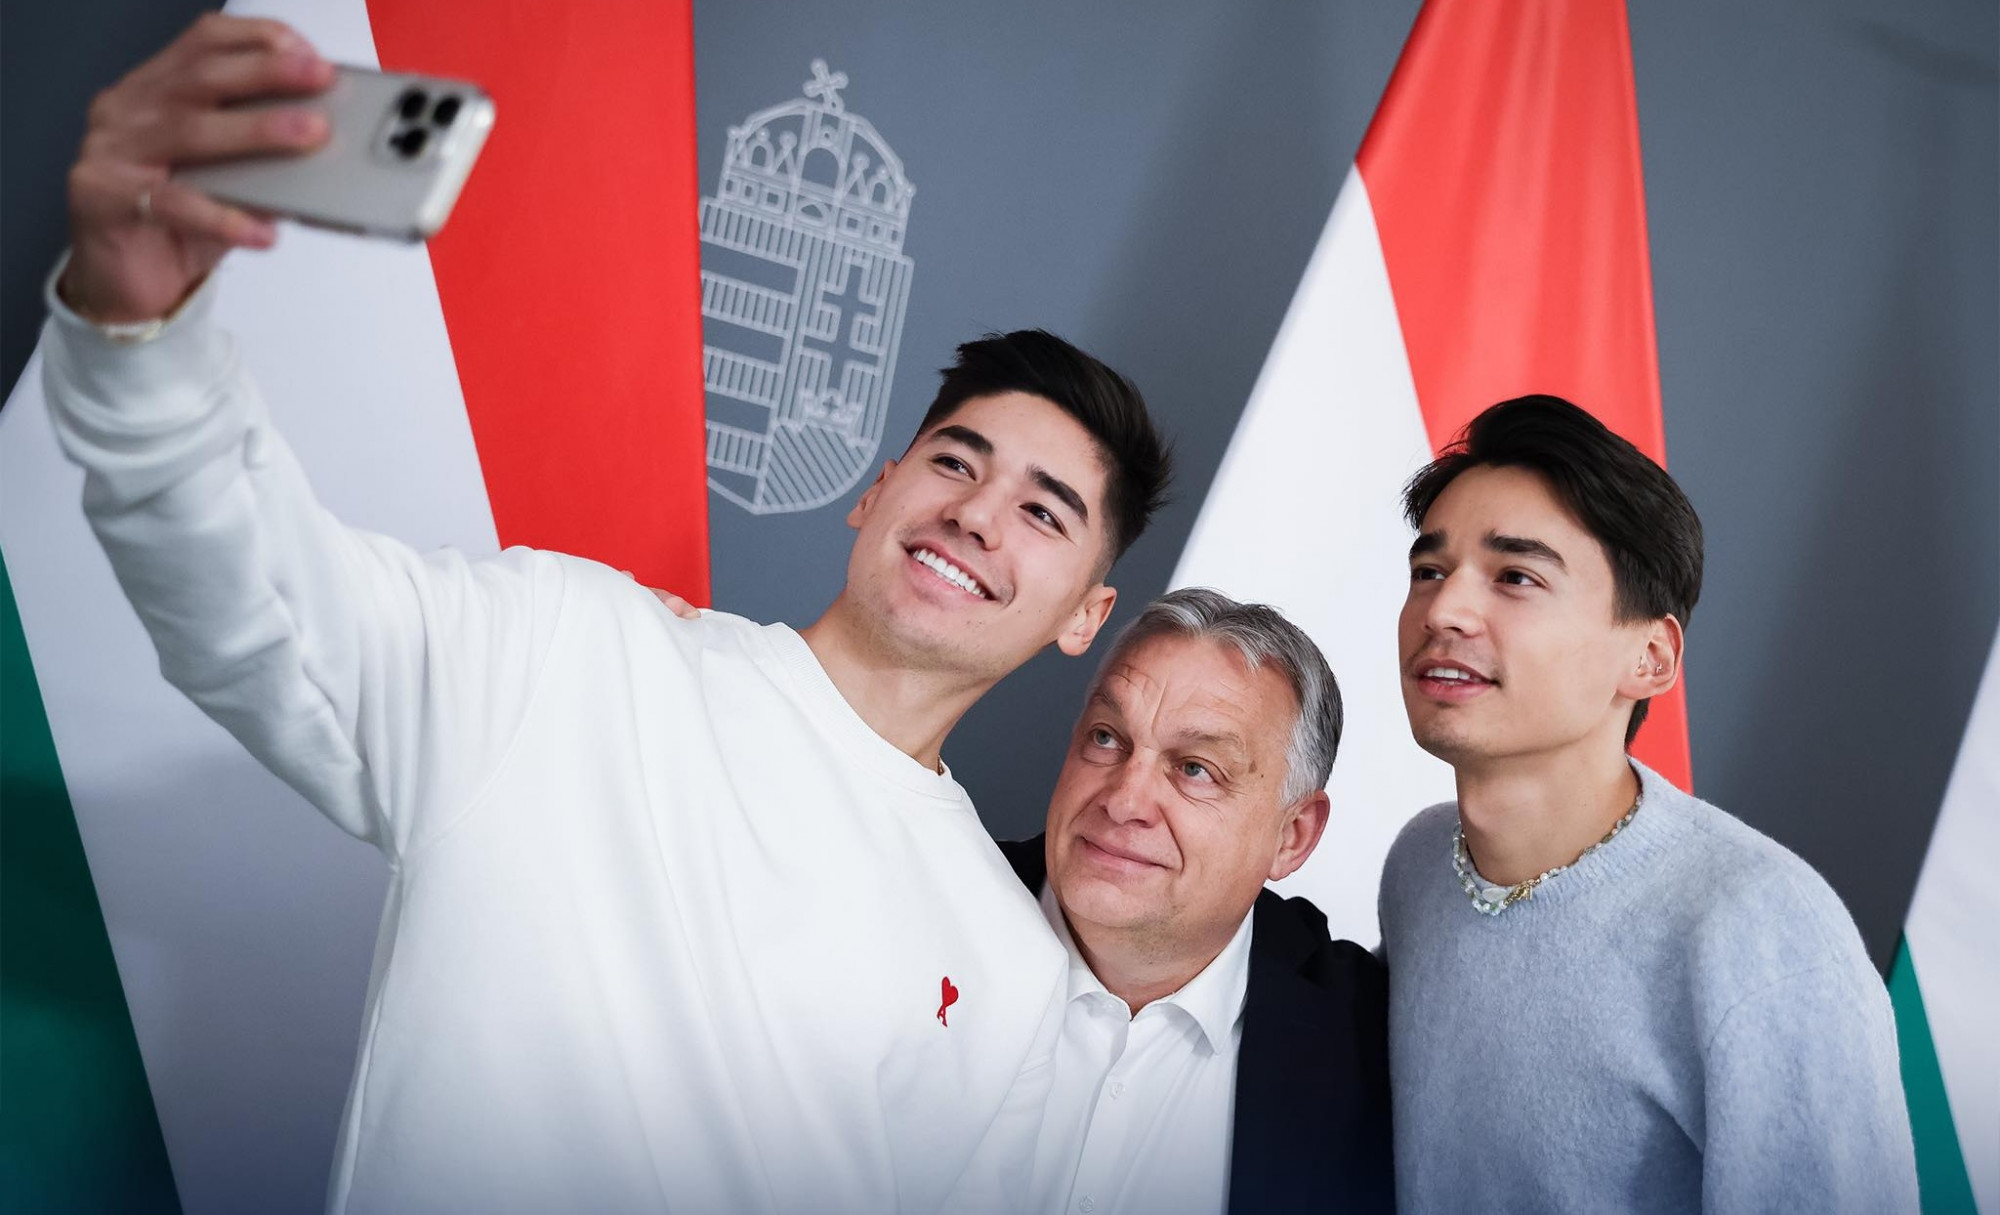 „Sok sikert az új kalandokhoz!” – üzeni Orbán a Liu testvéreknek, akik már kínai színekben versenyeznének